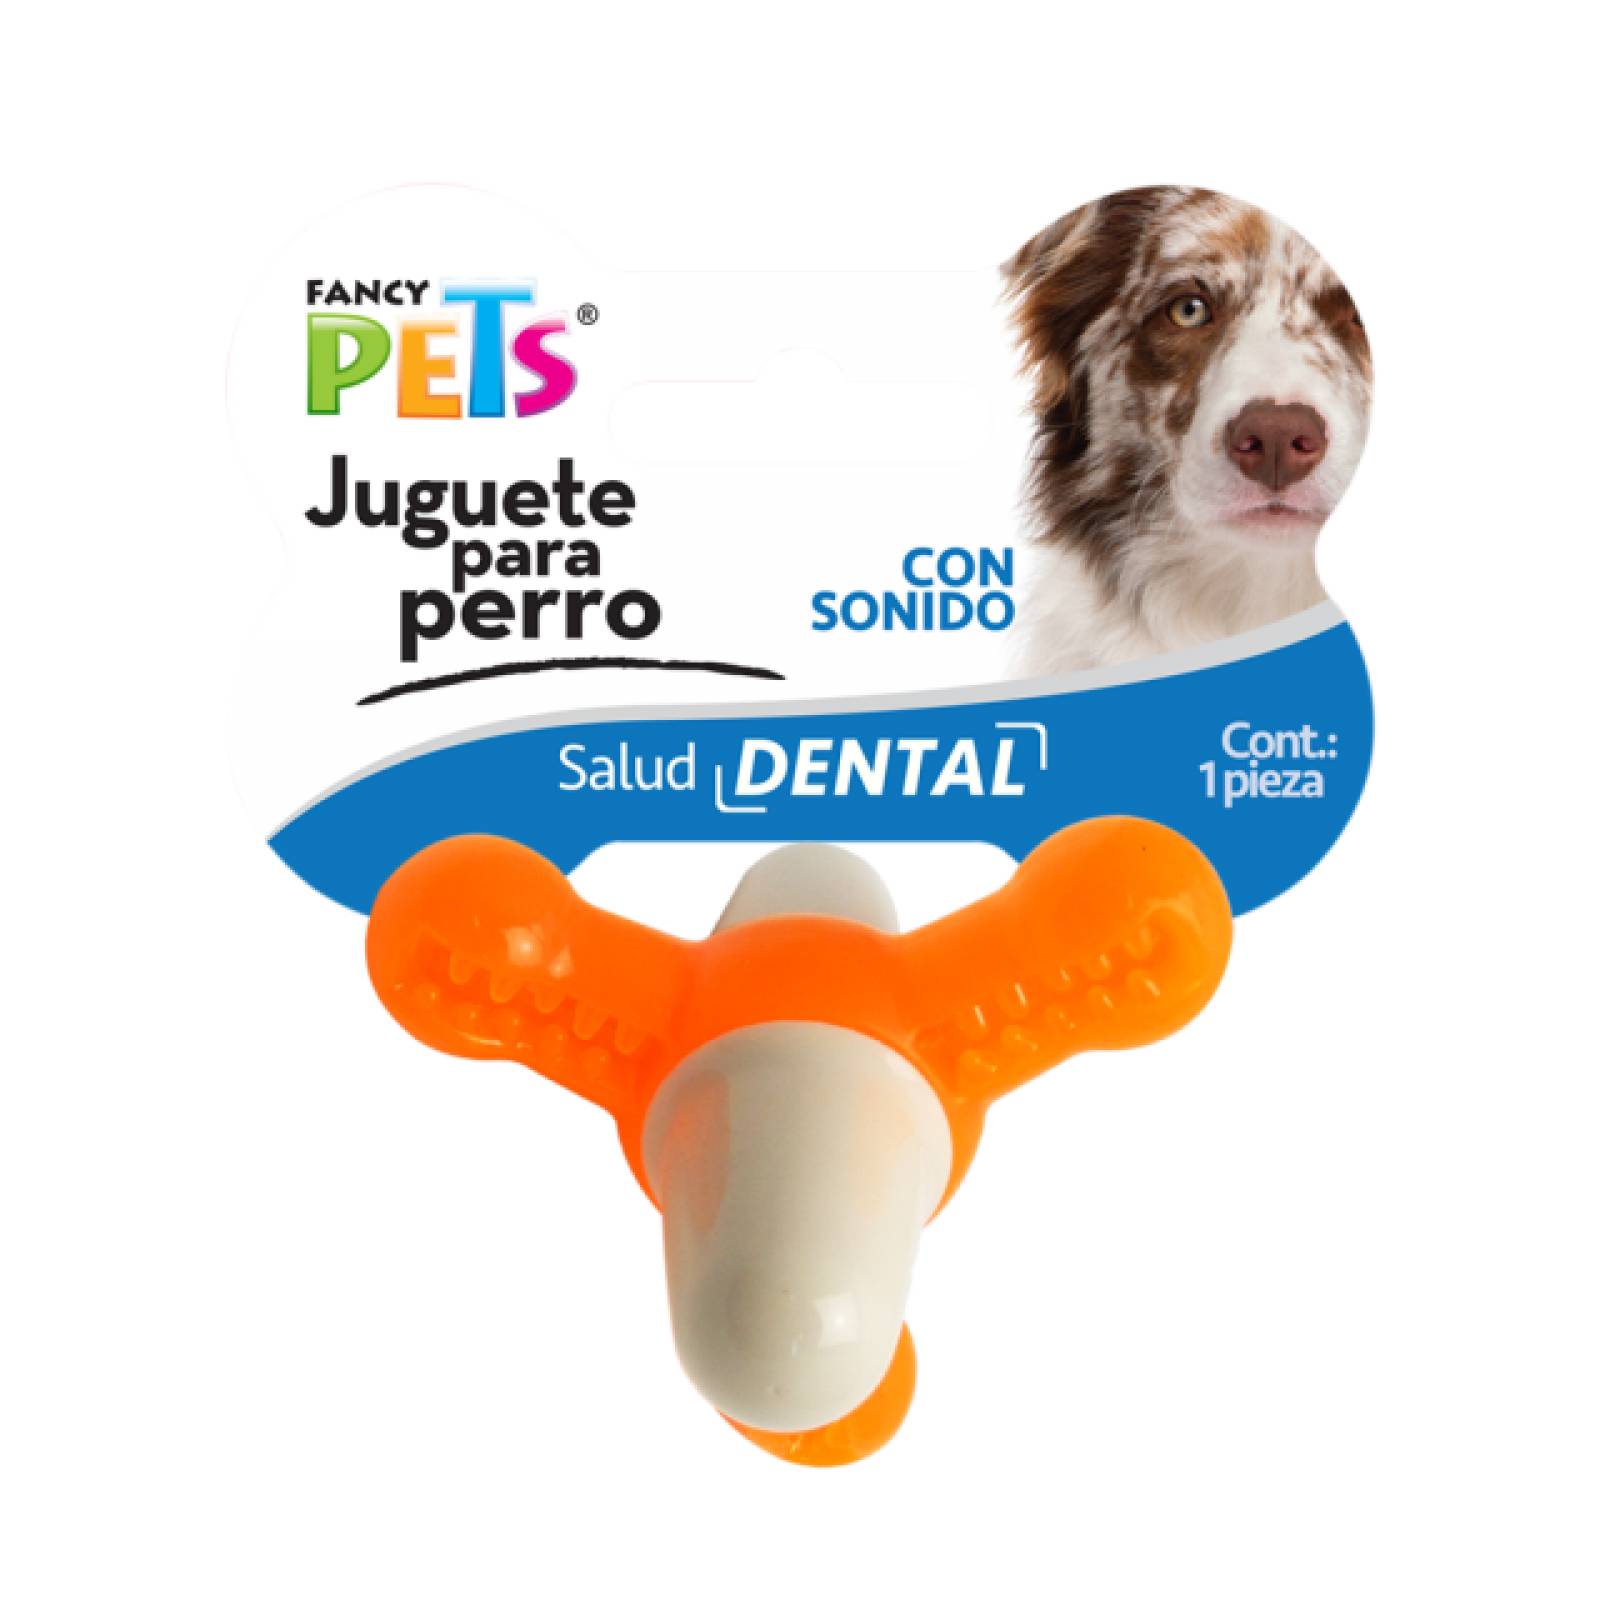 Fancy Pets Juguete Dental para Perro Matatena con Sonido